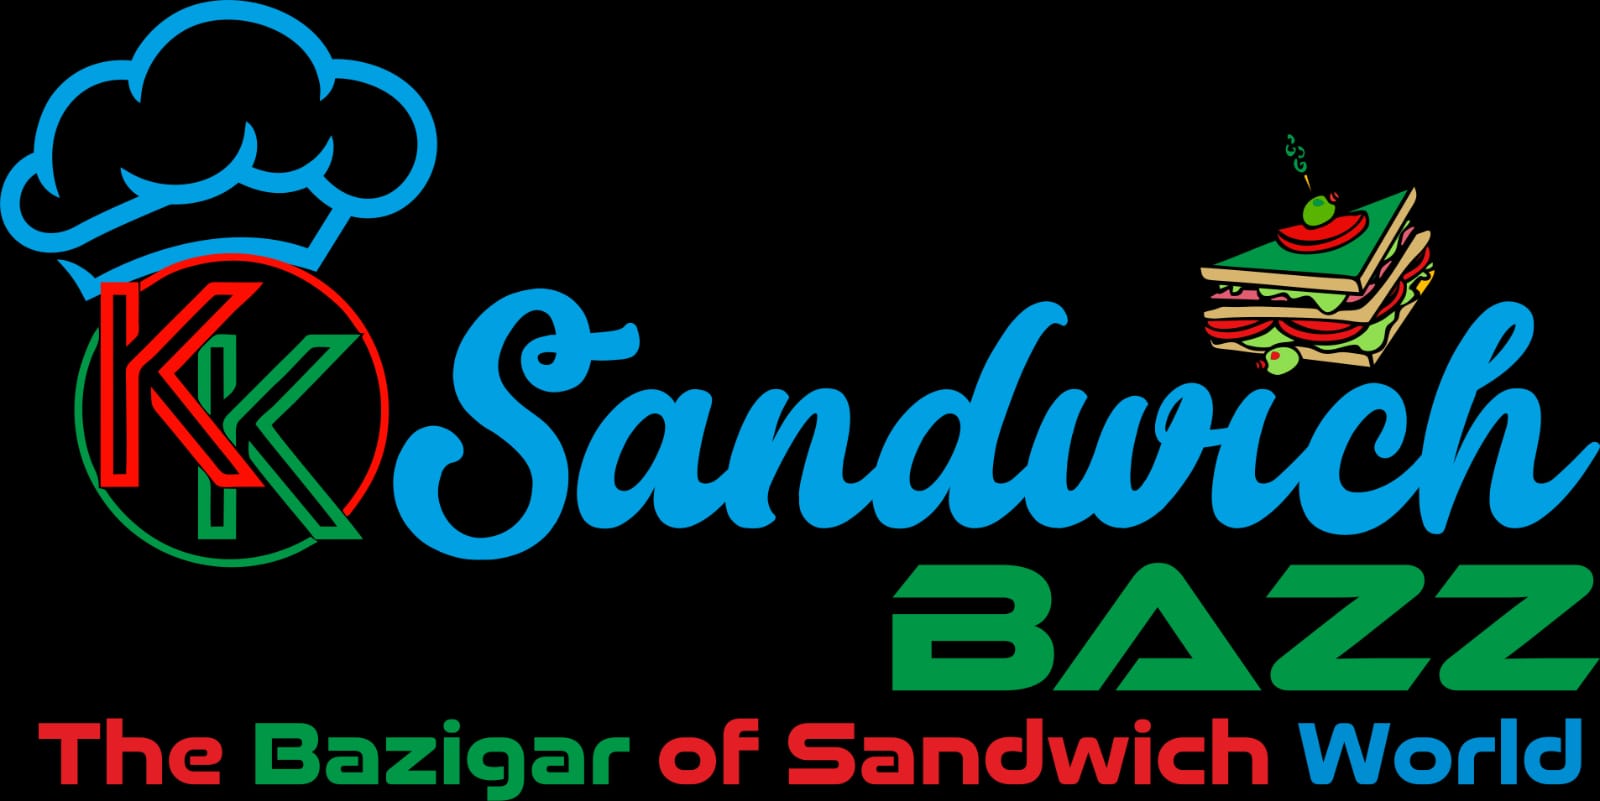 Sandwich Bazz